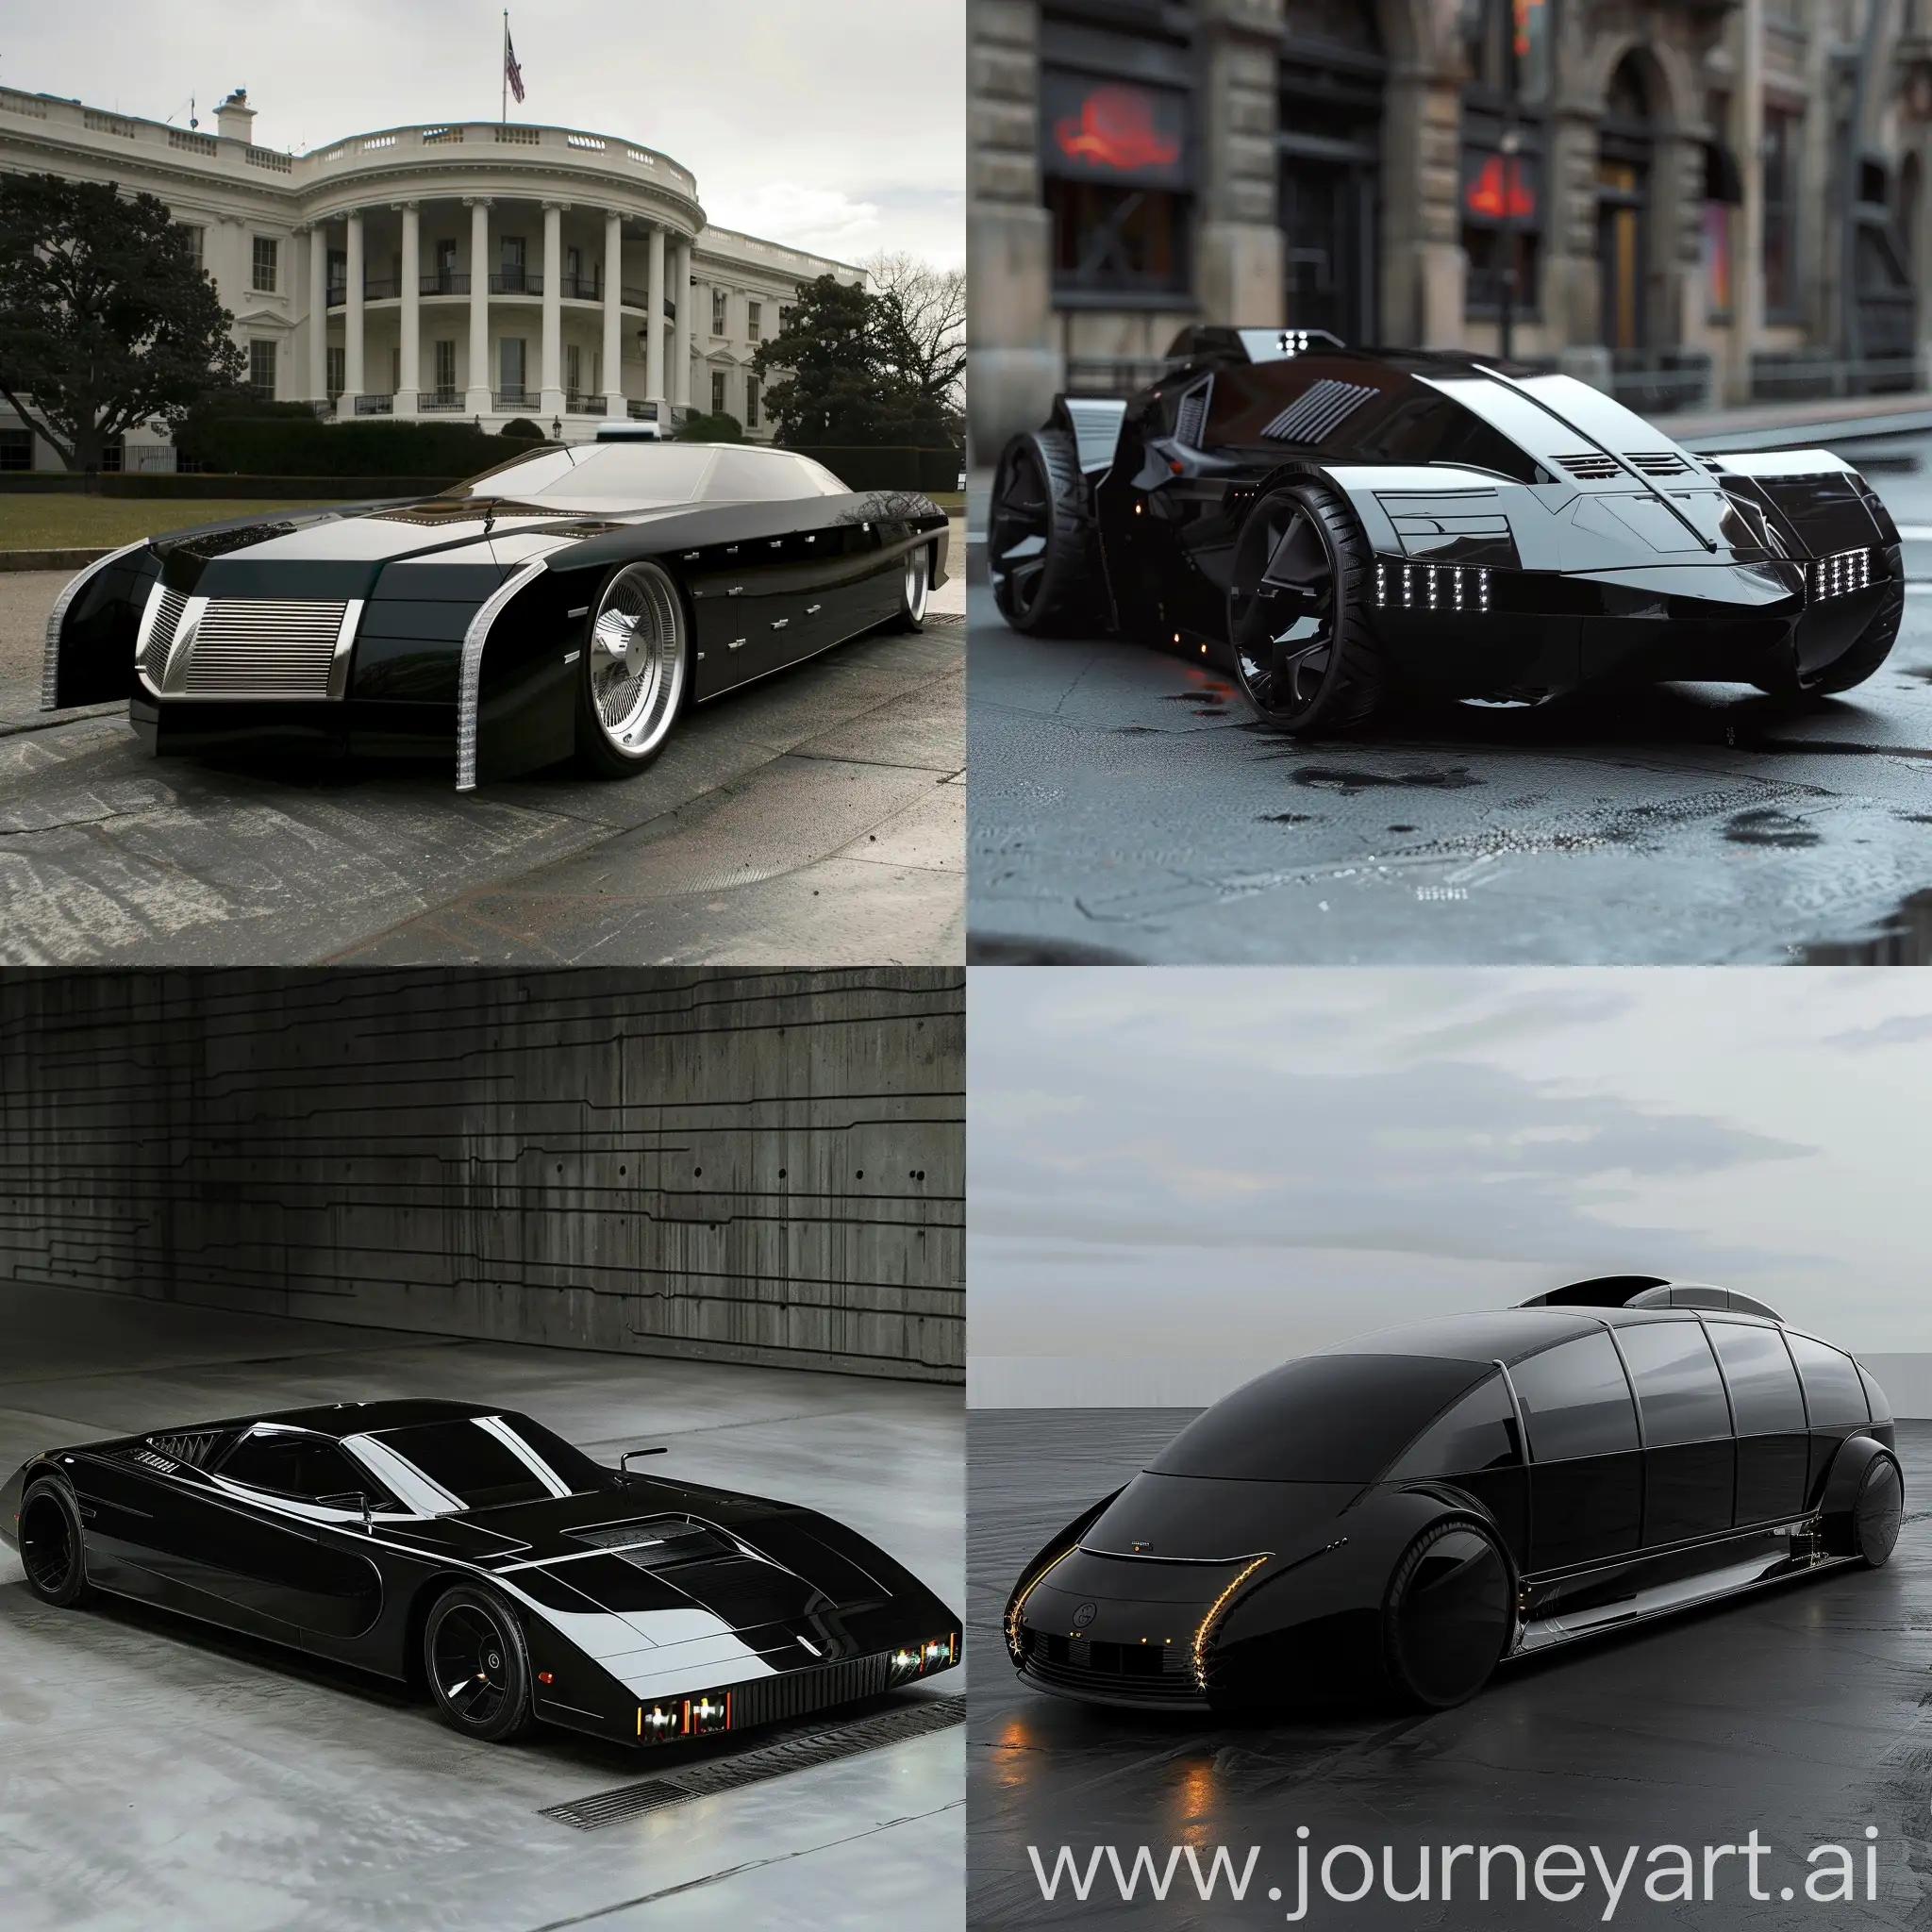 Futuristic-Black-Government-Car-Concept